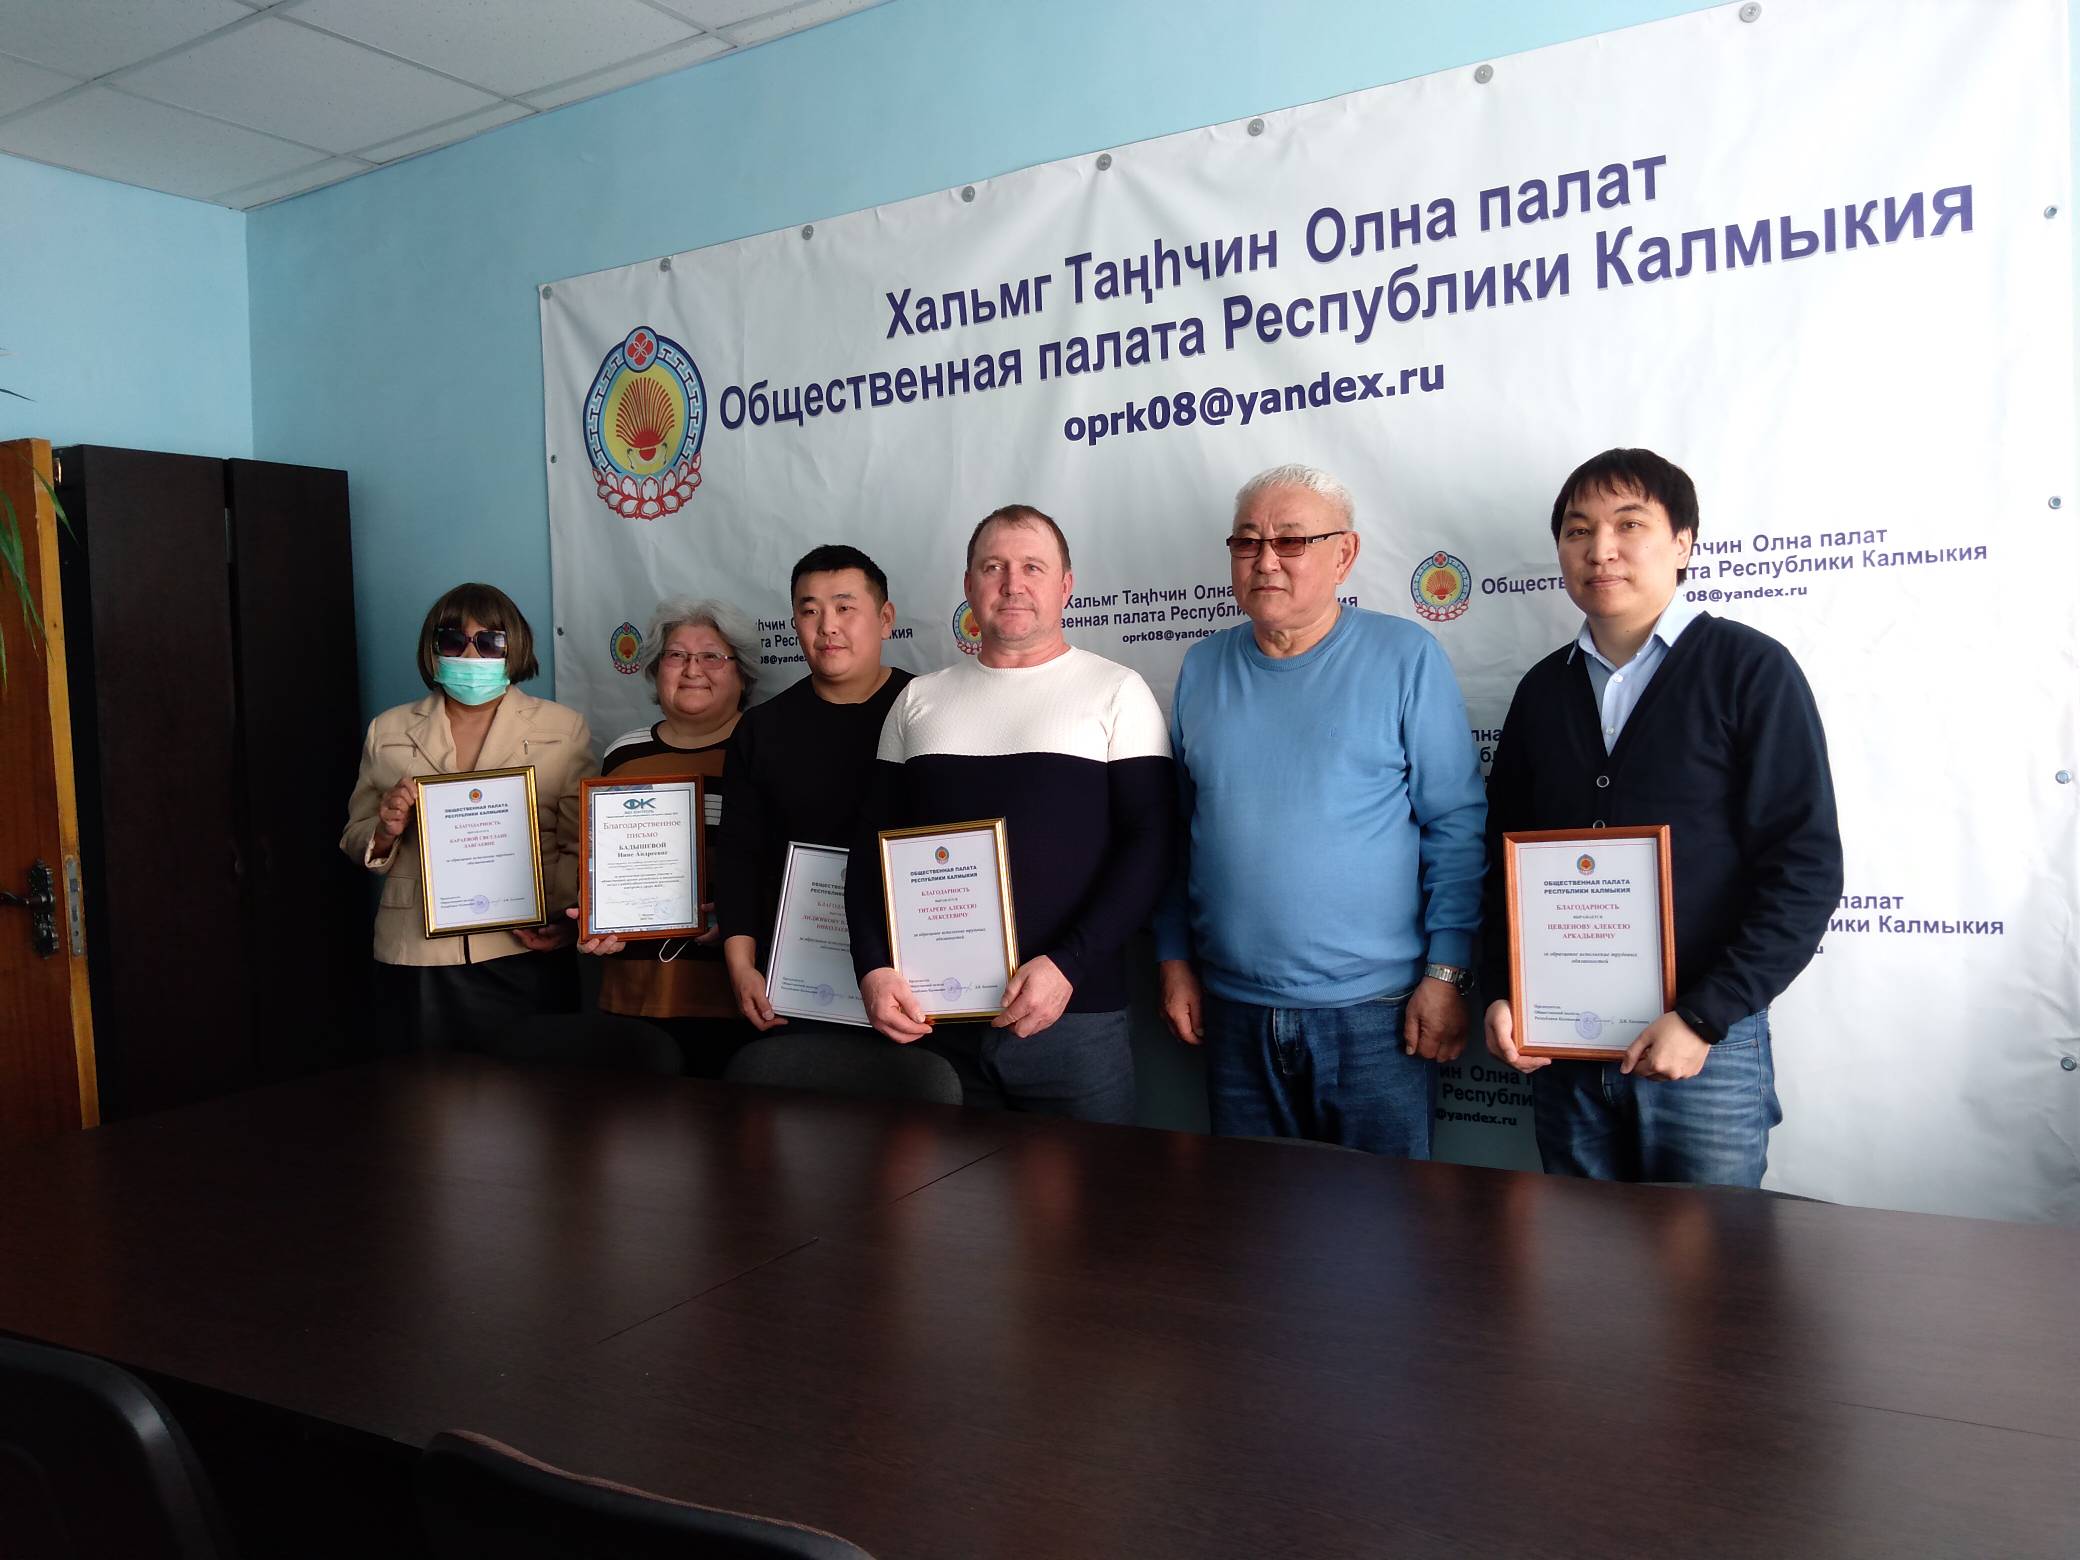 Общественная палата Республики Калмыкия наградила работников бытового обслуживания населения и ЖКХ Калмыкии